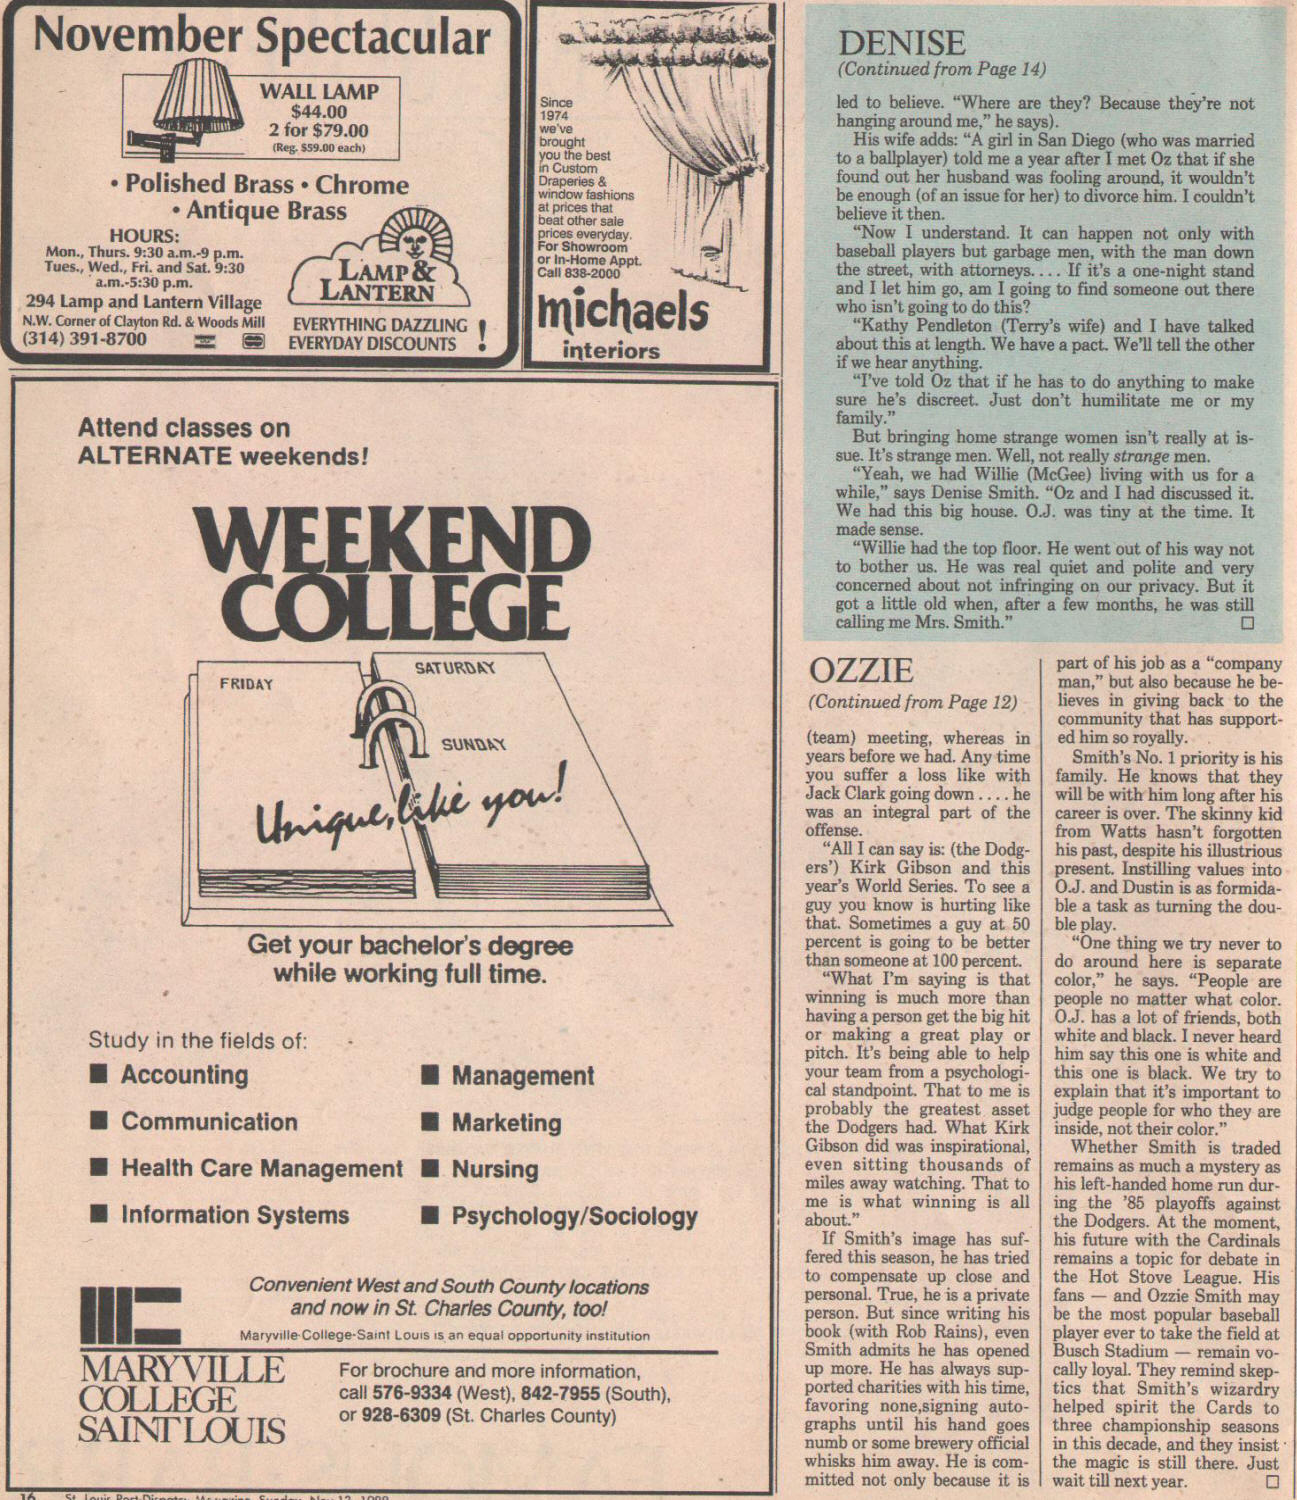 St. Louis Post-Dispatch Magazine - Ozzie Smith - 11/13/88